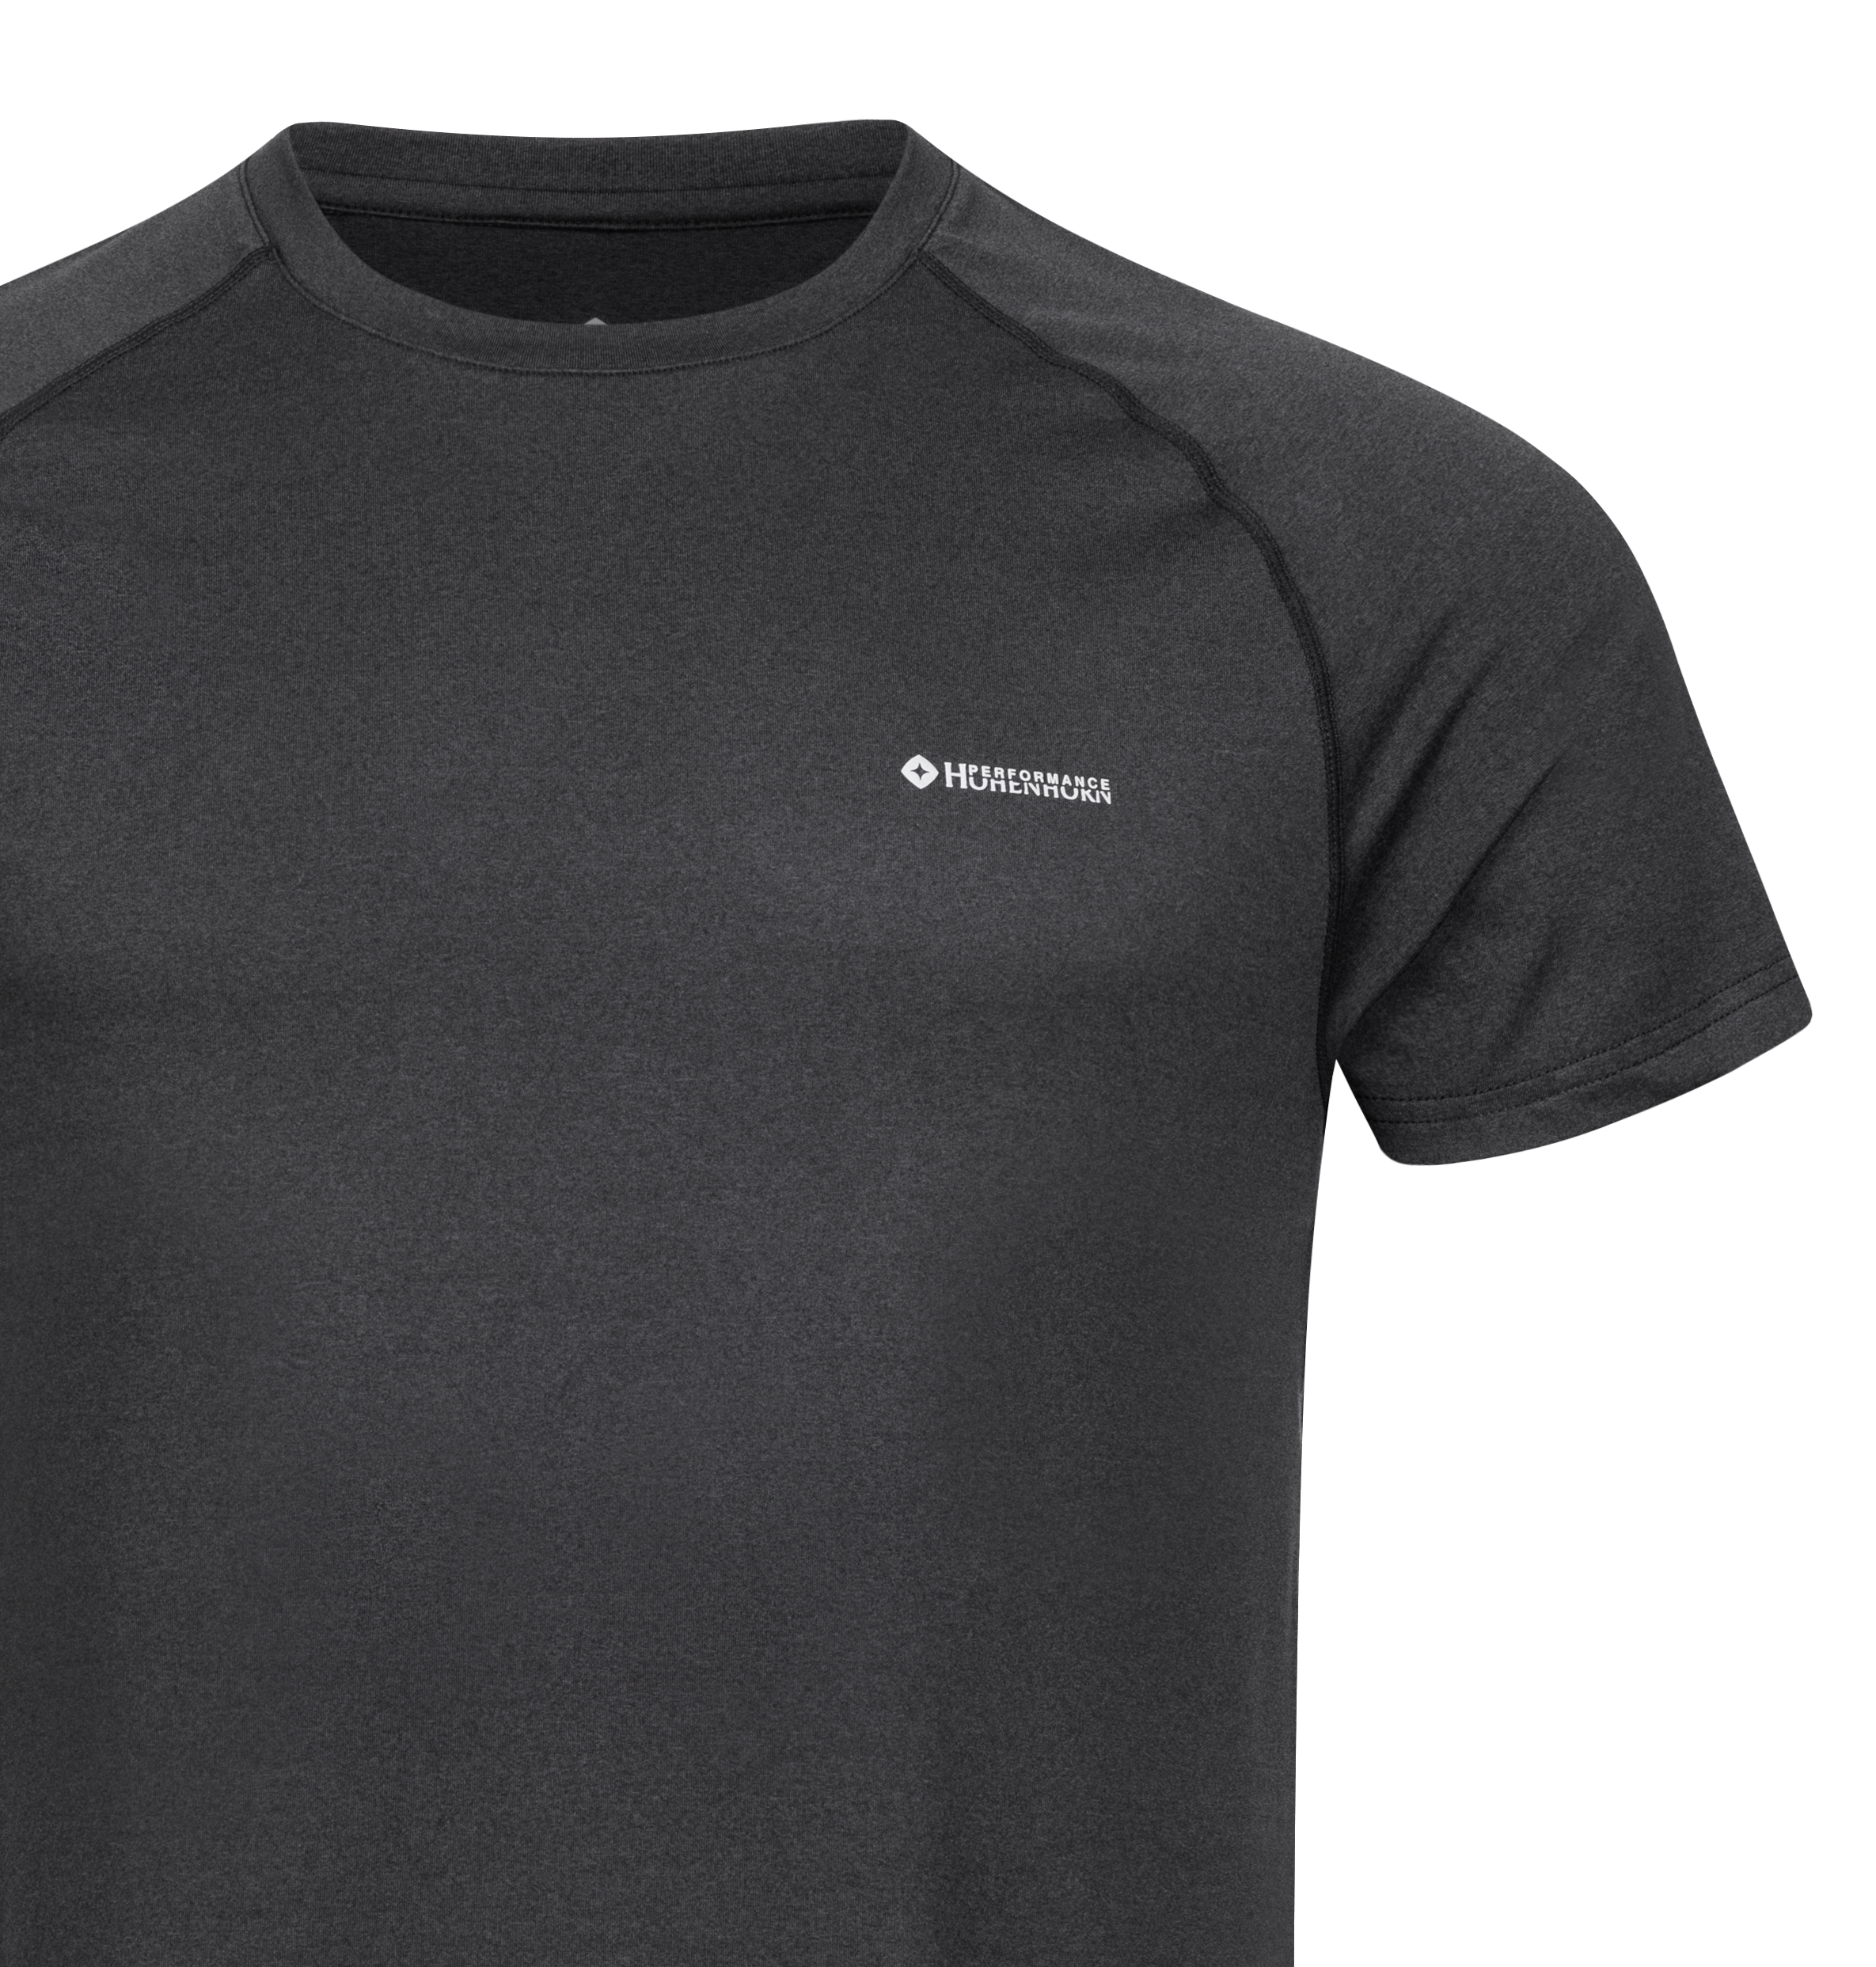 Höhenhorn Kannin Herren T-Shirt Laufshirt Fitness aus Recyceltem Material